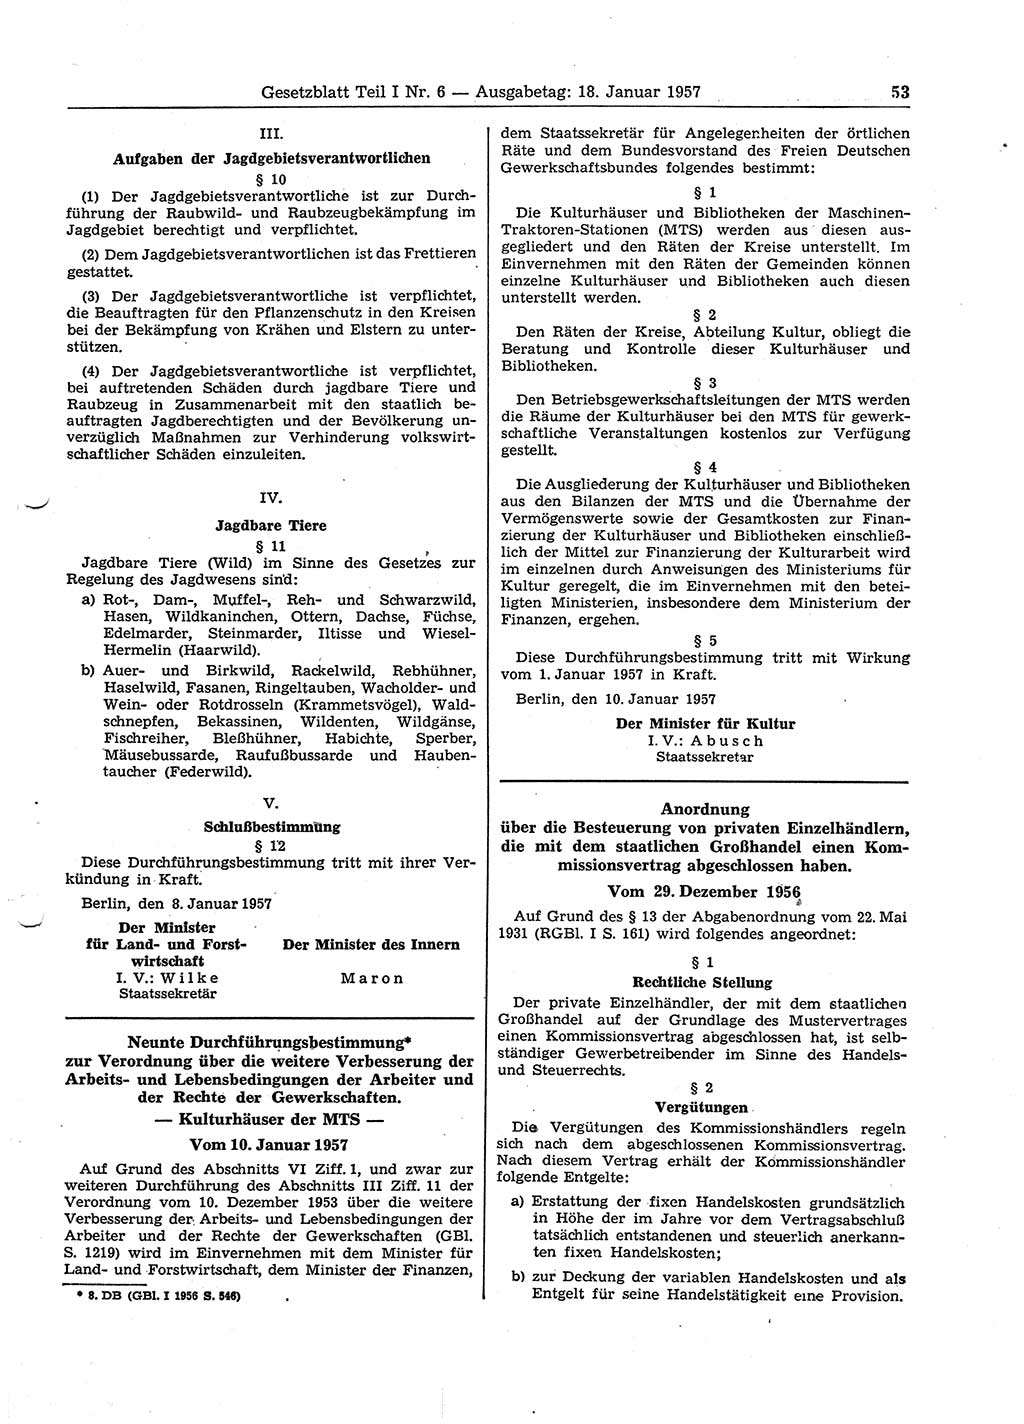 Gesetzblatt (GBl.) der Deutschen Demokratischen Republik (DDR) Teil Ⅰ 1957, Seite 53 (GBl. DDR Ⅰ 1957, S. 53)